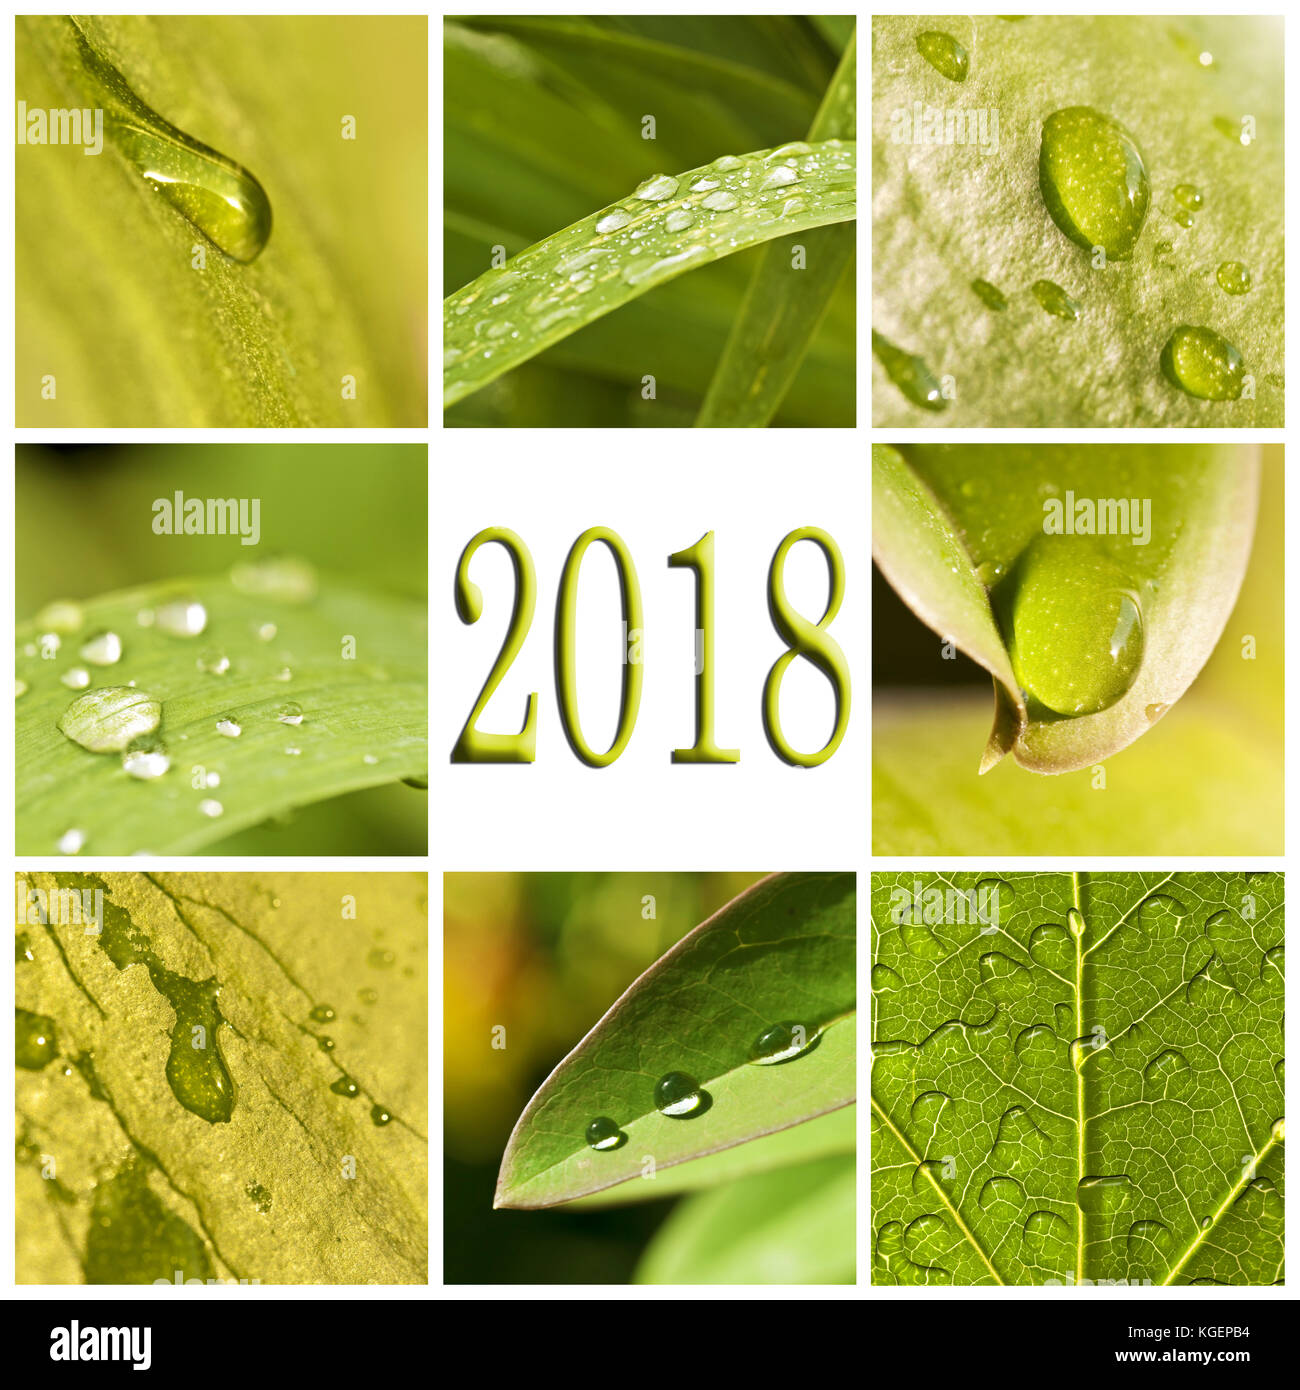 2018, foglie verdi e le gocce di pioggia photo collage Foto Stock